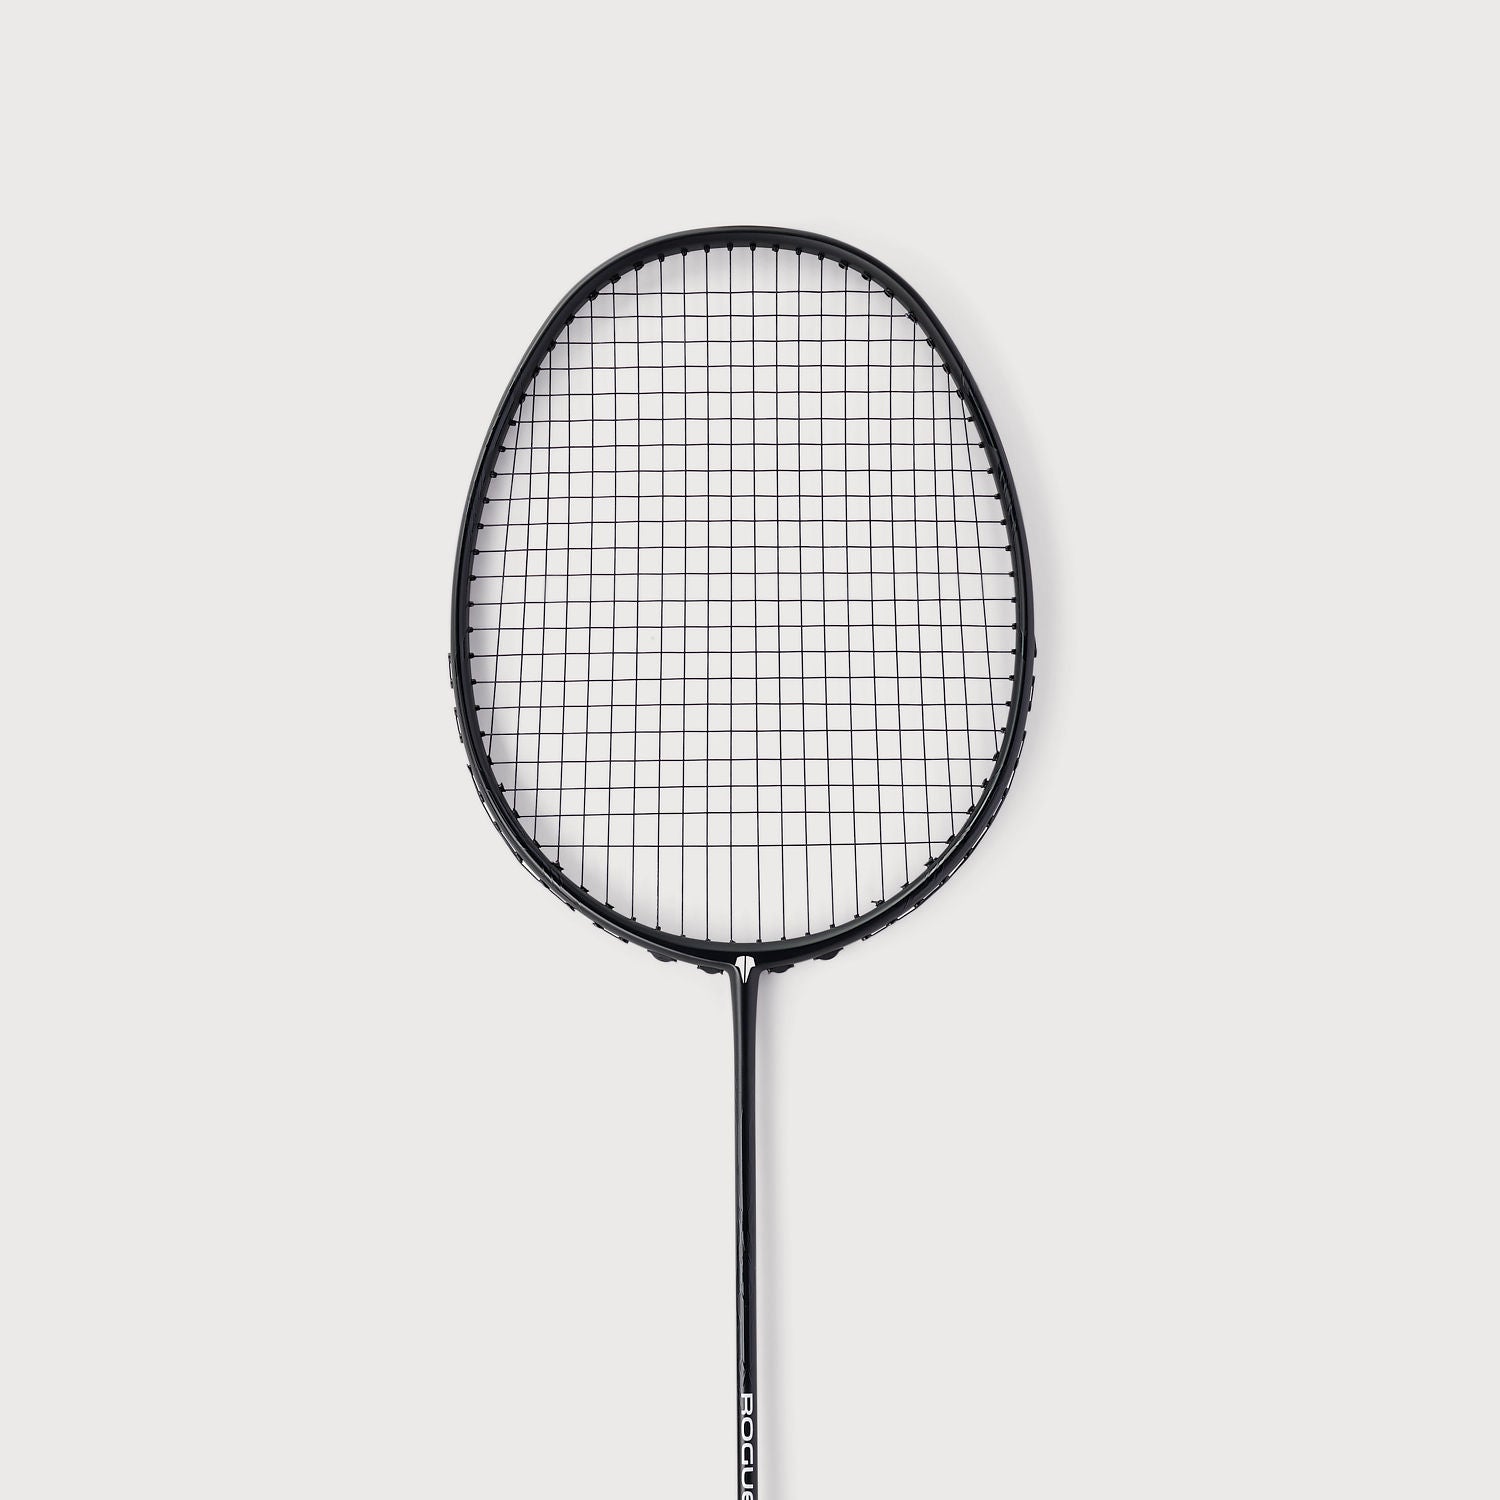 artengo badminton rackets online